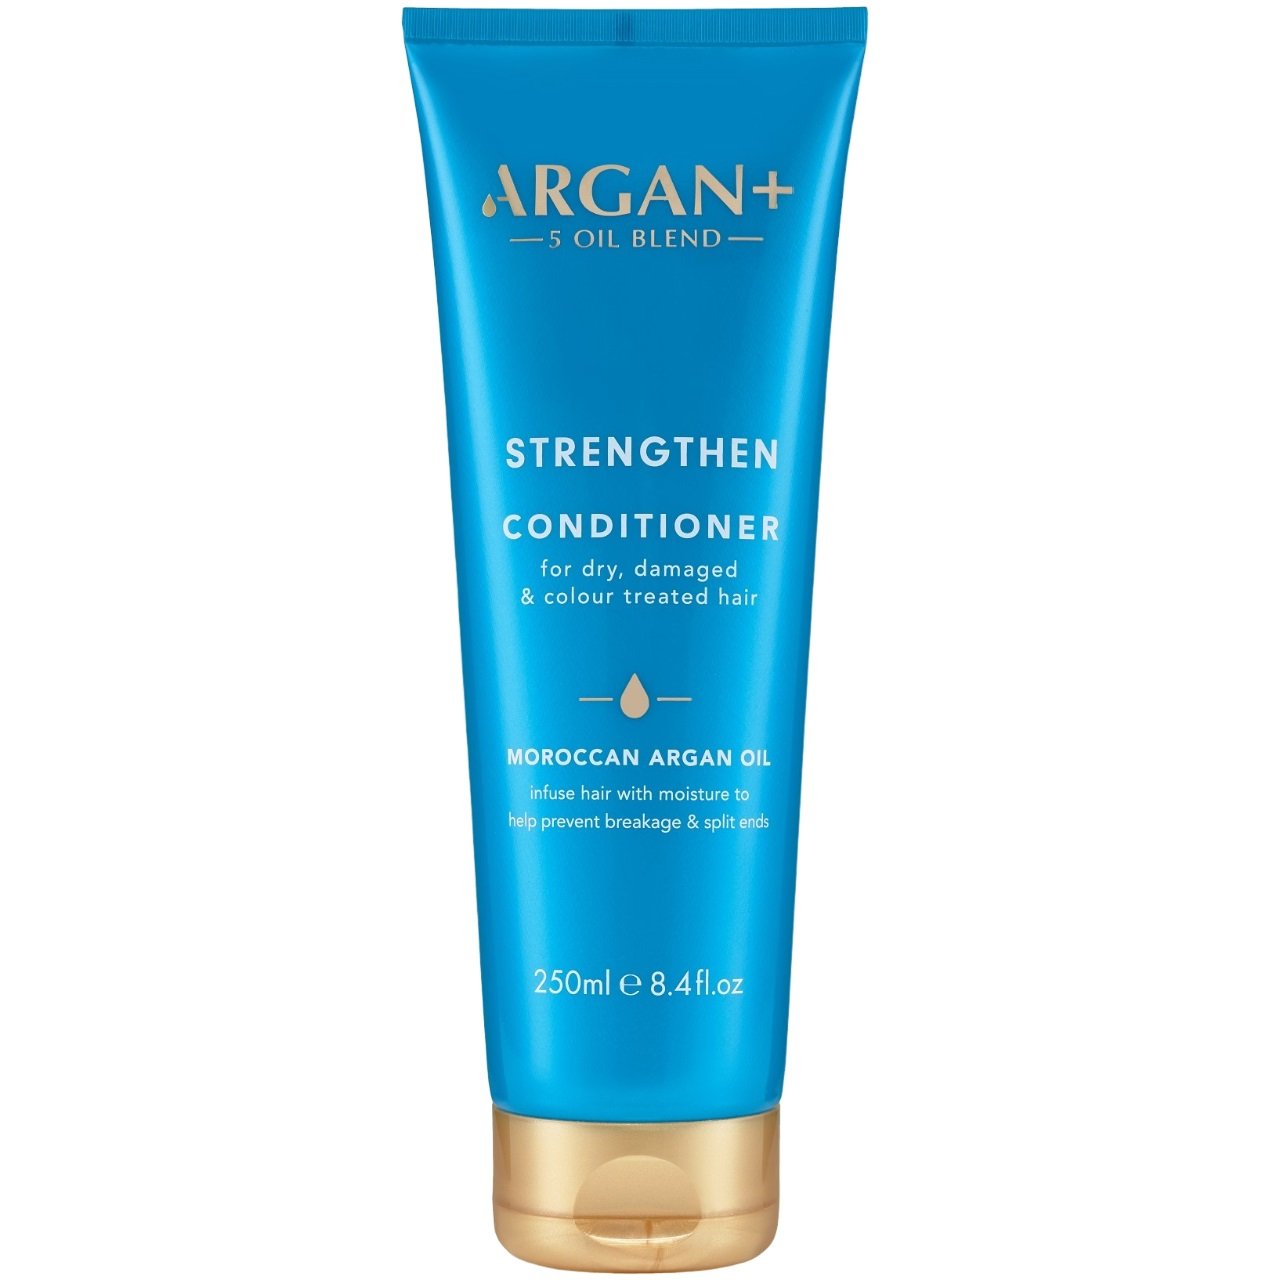 Кондиционер для волос Argan+ Moroccan Argan Oil Strengthen, 250 мл - фото 1